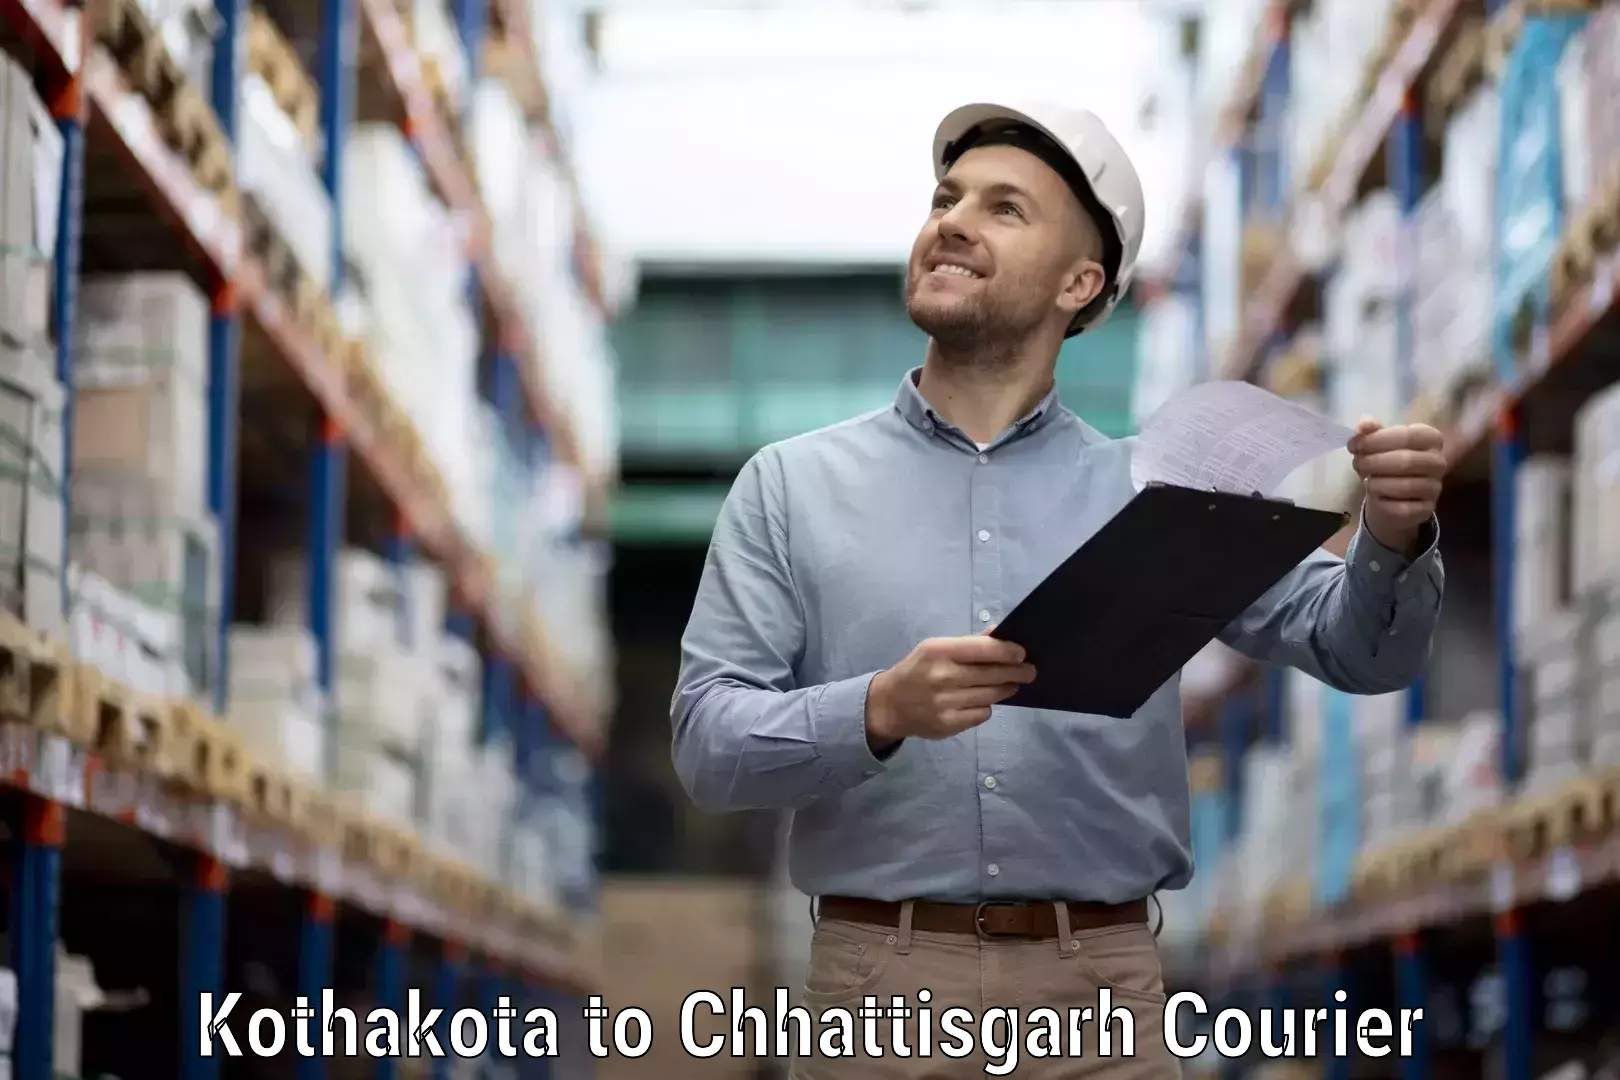 Easy access courier services Kothakota to Raigarh Chhattisgarh